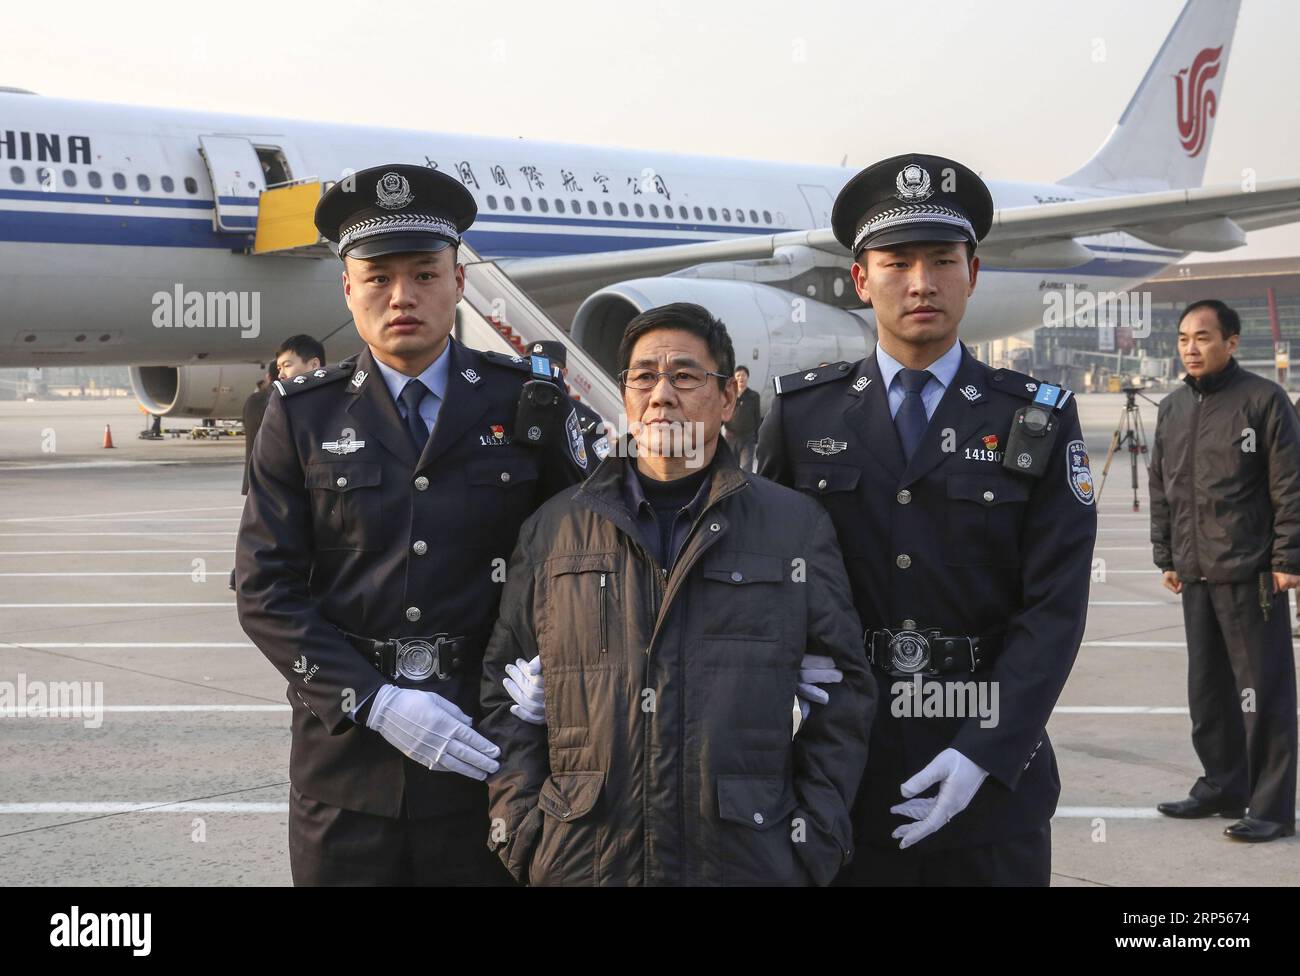 (181130) -- PÉKIN, 30 novembre 2018 (Xinhua) -- Yao Jinqi est escorté par la police à l'aéroport international Capital de Pékin, capitale de la Chine, le 30 novembre 2018. Yao Jinqi, un suspect de crime de service et ancien chef adjoint du comté de Xinchang dans la province du Zhejiang de l est de la Chine, a été extradé vendredi vers la Chine depuis la Bulgarie. Yao, qui a fui à l'étranger en décembre 2005, est devenu le premier ancien fonctionnaire chinois extradé d'un État membre de l'UE. Coordonné par un bureau chargé du rapatriement des fugitifs et du recouvrement des avoirs relevant du groupe central de coordination de la lutte contre la corruption en Chine, ce fut aussi le premier succès Banque D'Images